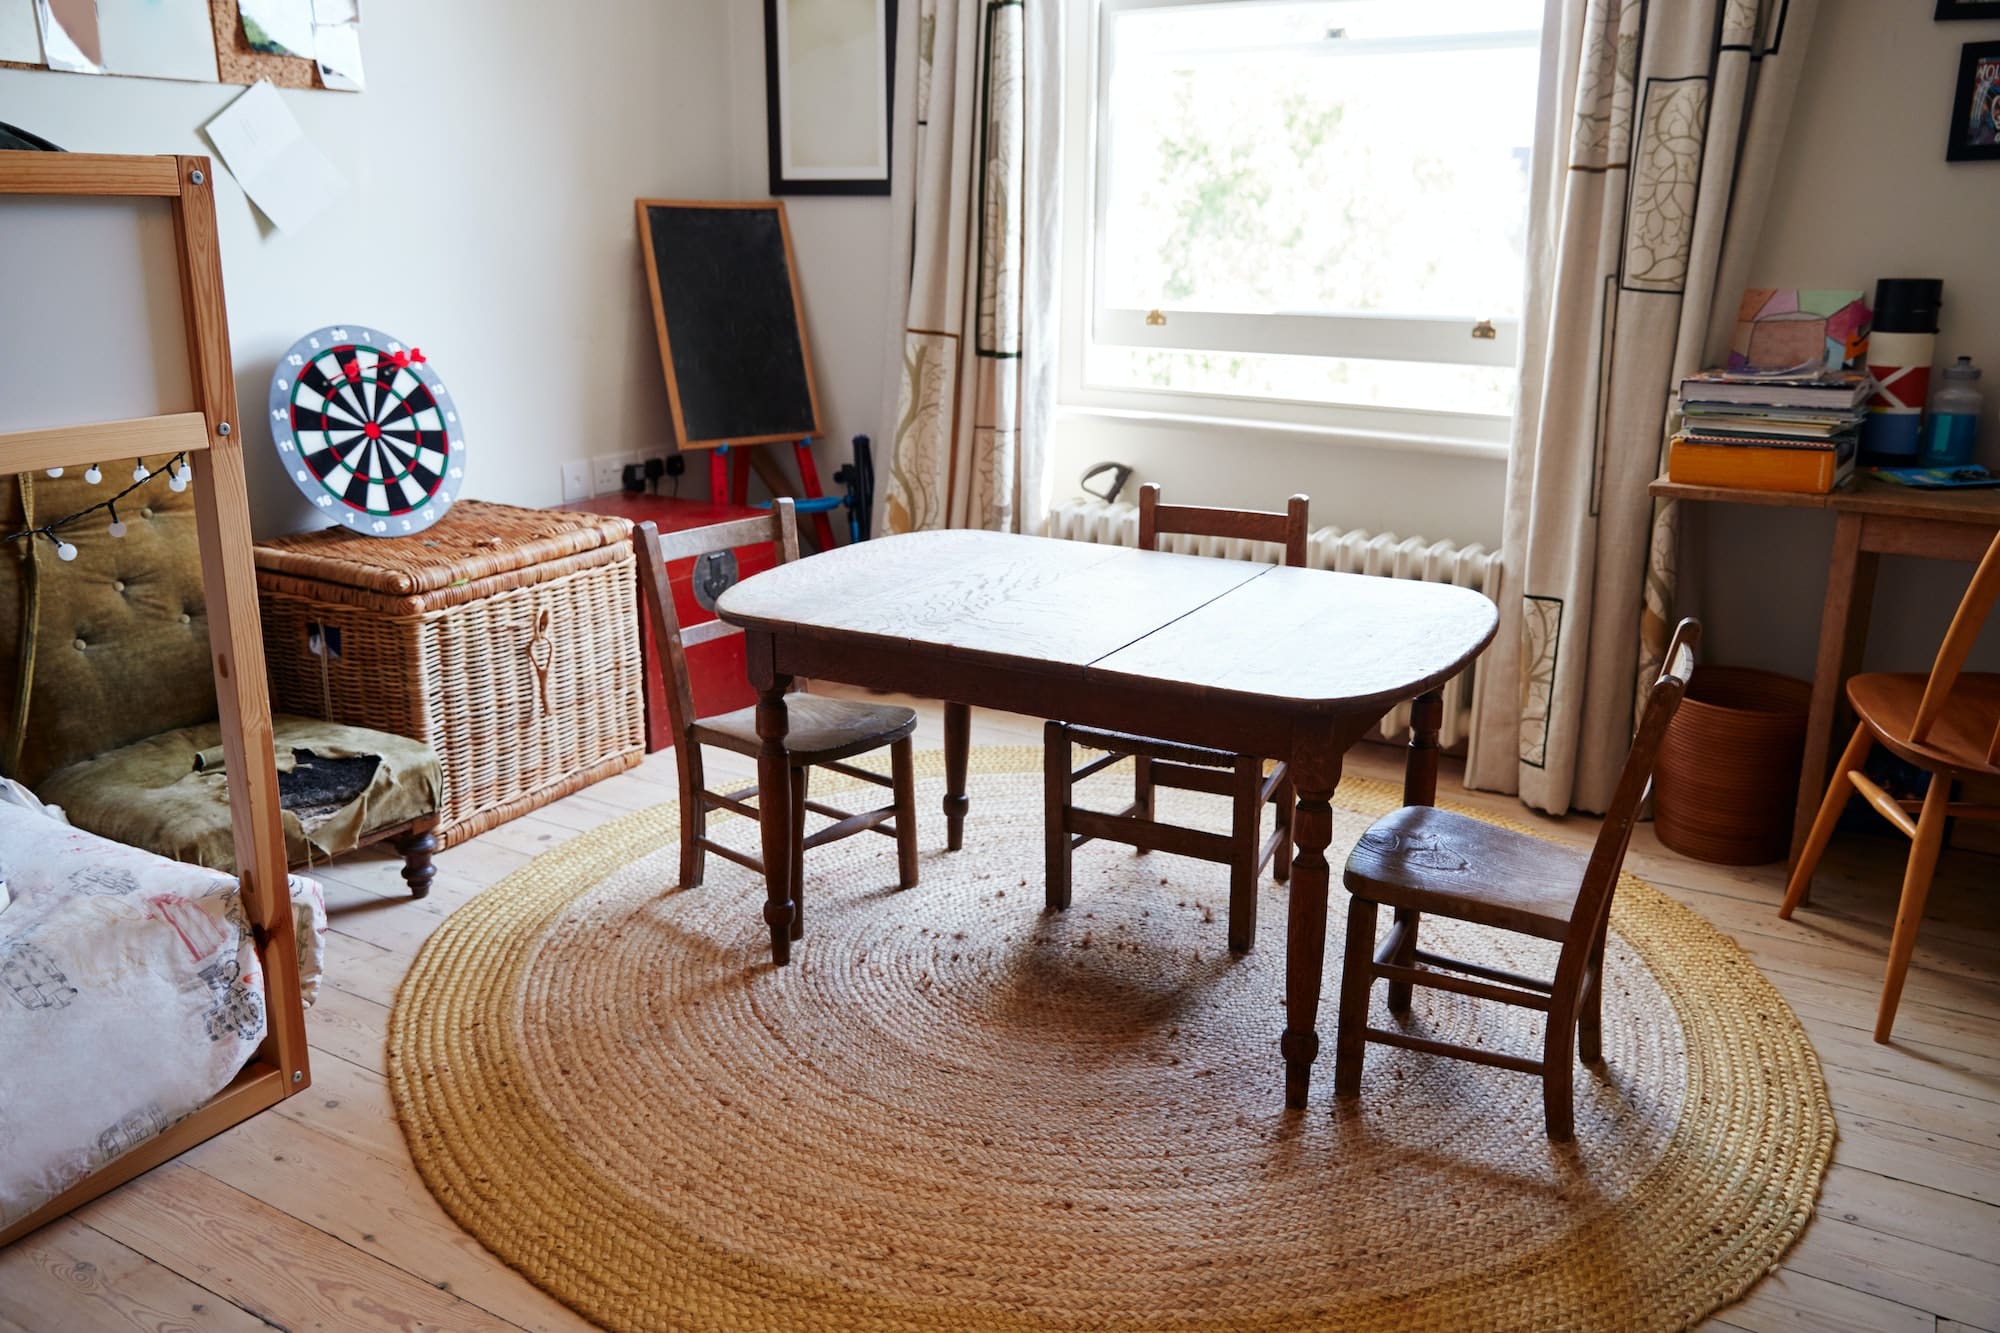 Création unique : comment intégrer une table résine bois dans votre déco?